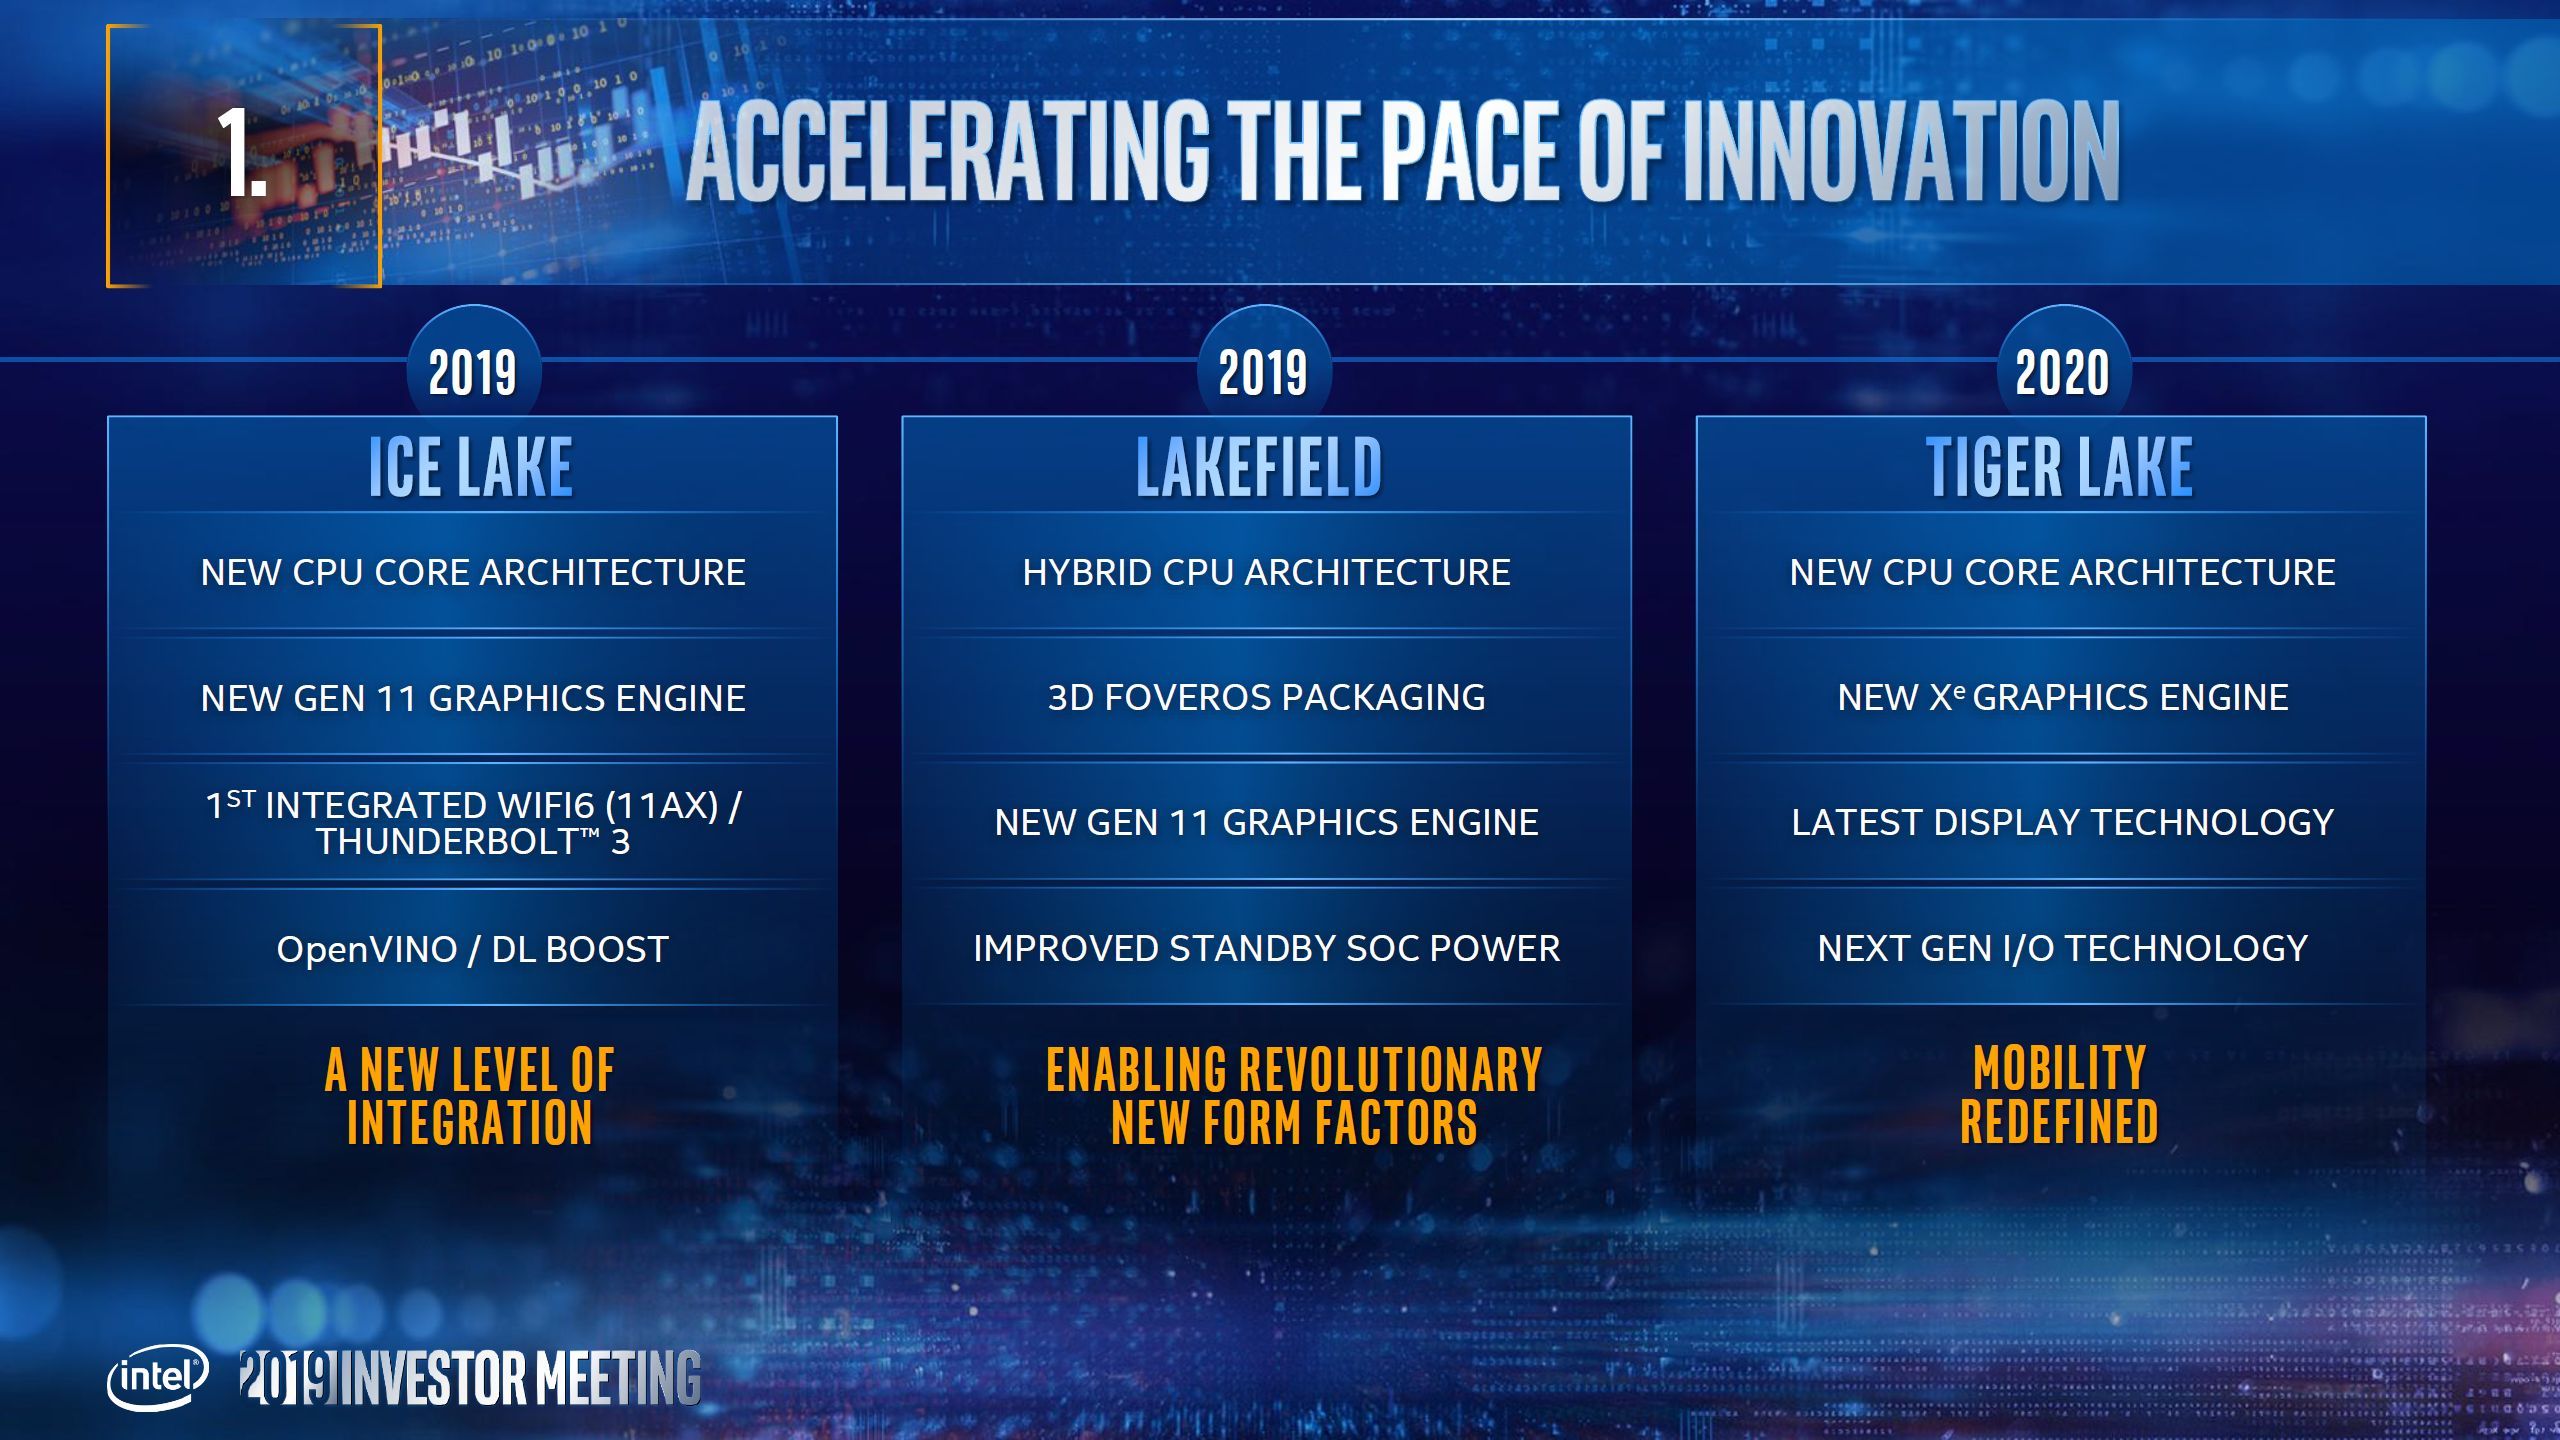 Mühendislik örneği Intel Tiger Lake-U işlemcisi Ice Lake modelinden %26’ya kadar daha hızlı